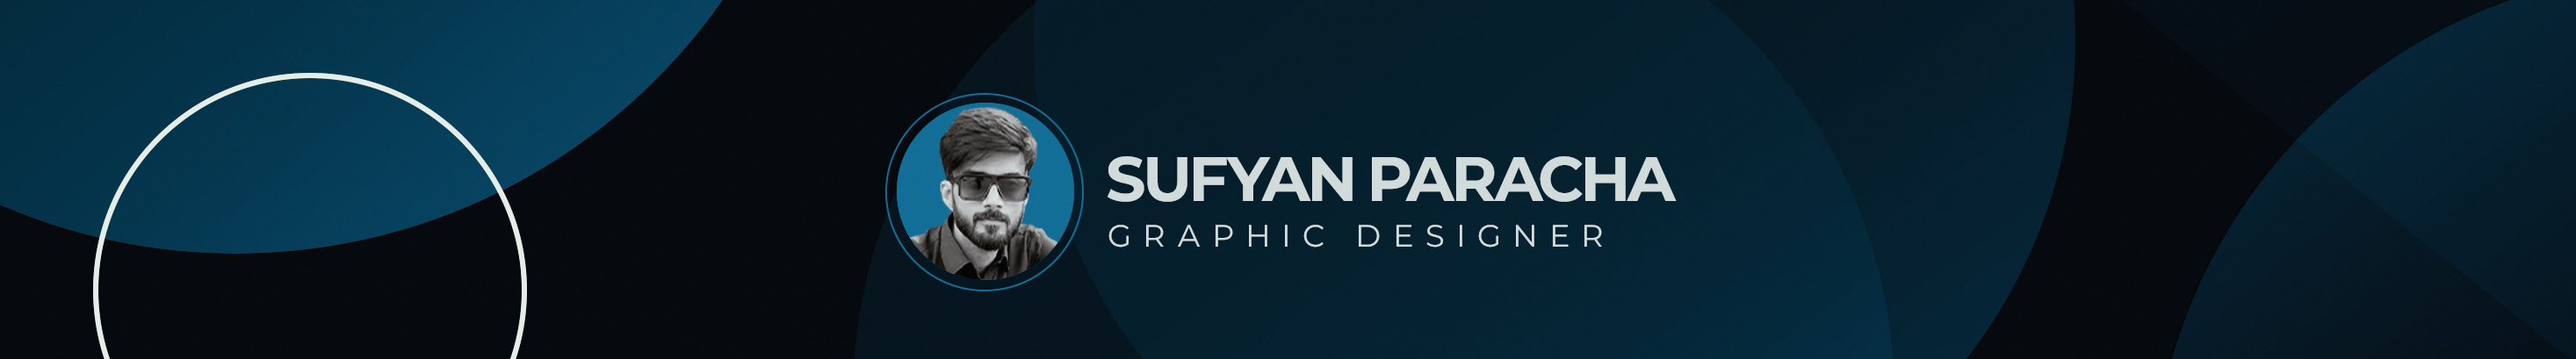 Sufyan Paracha's profile banner